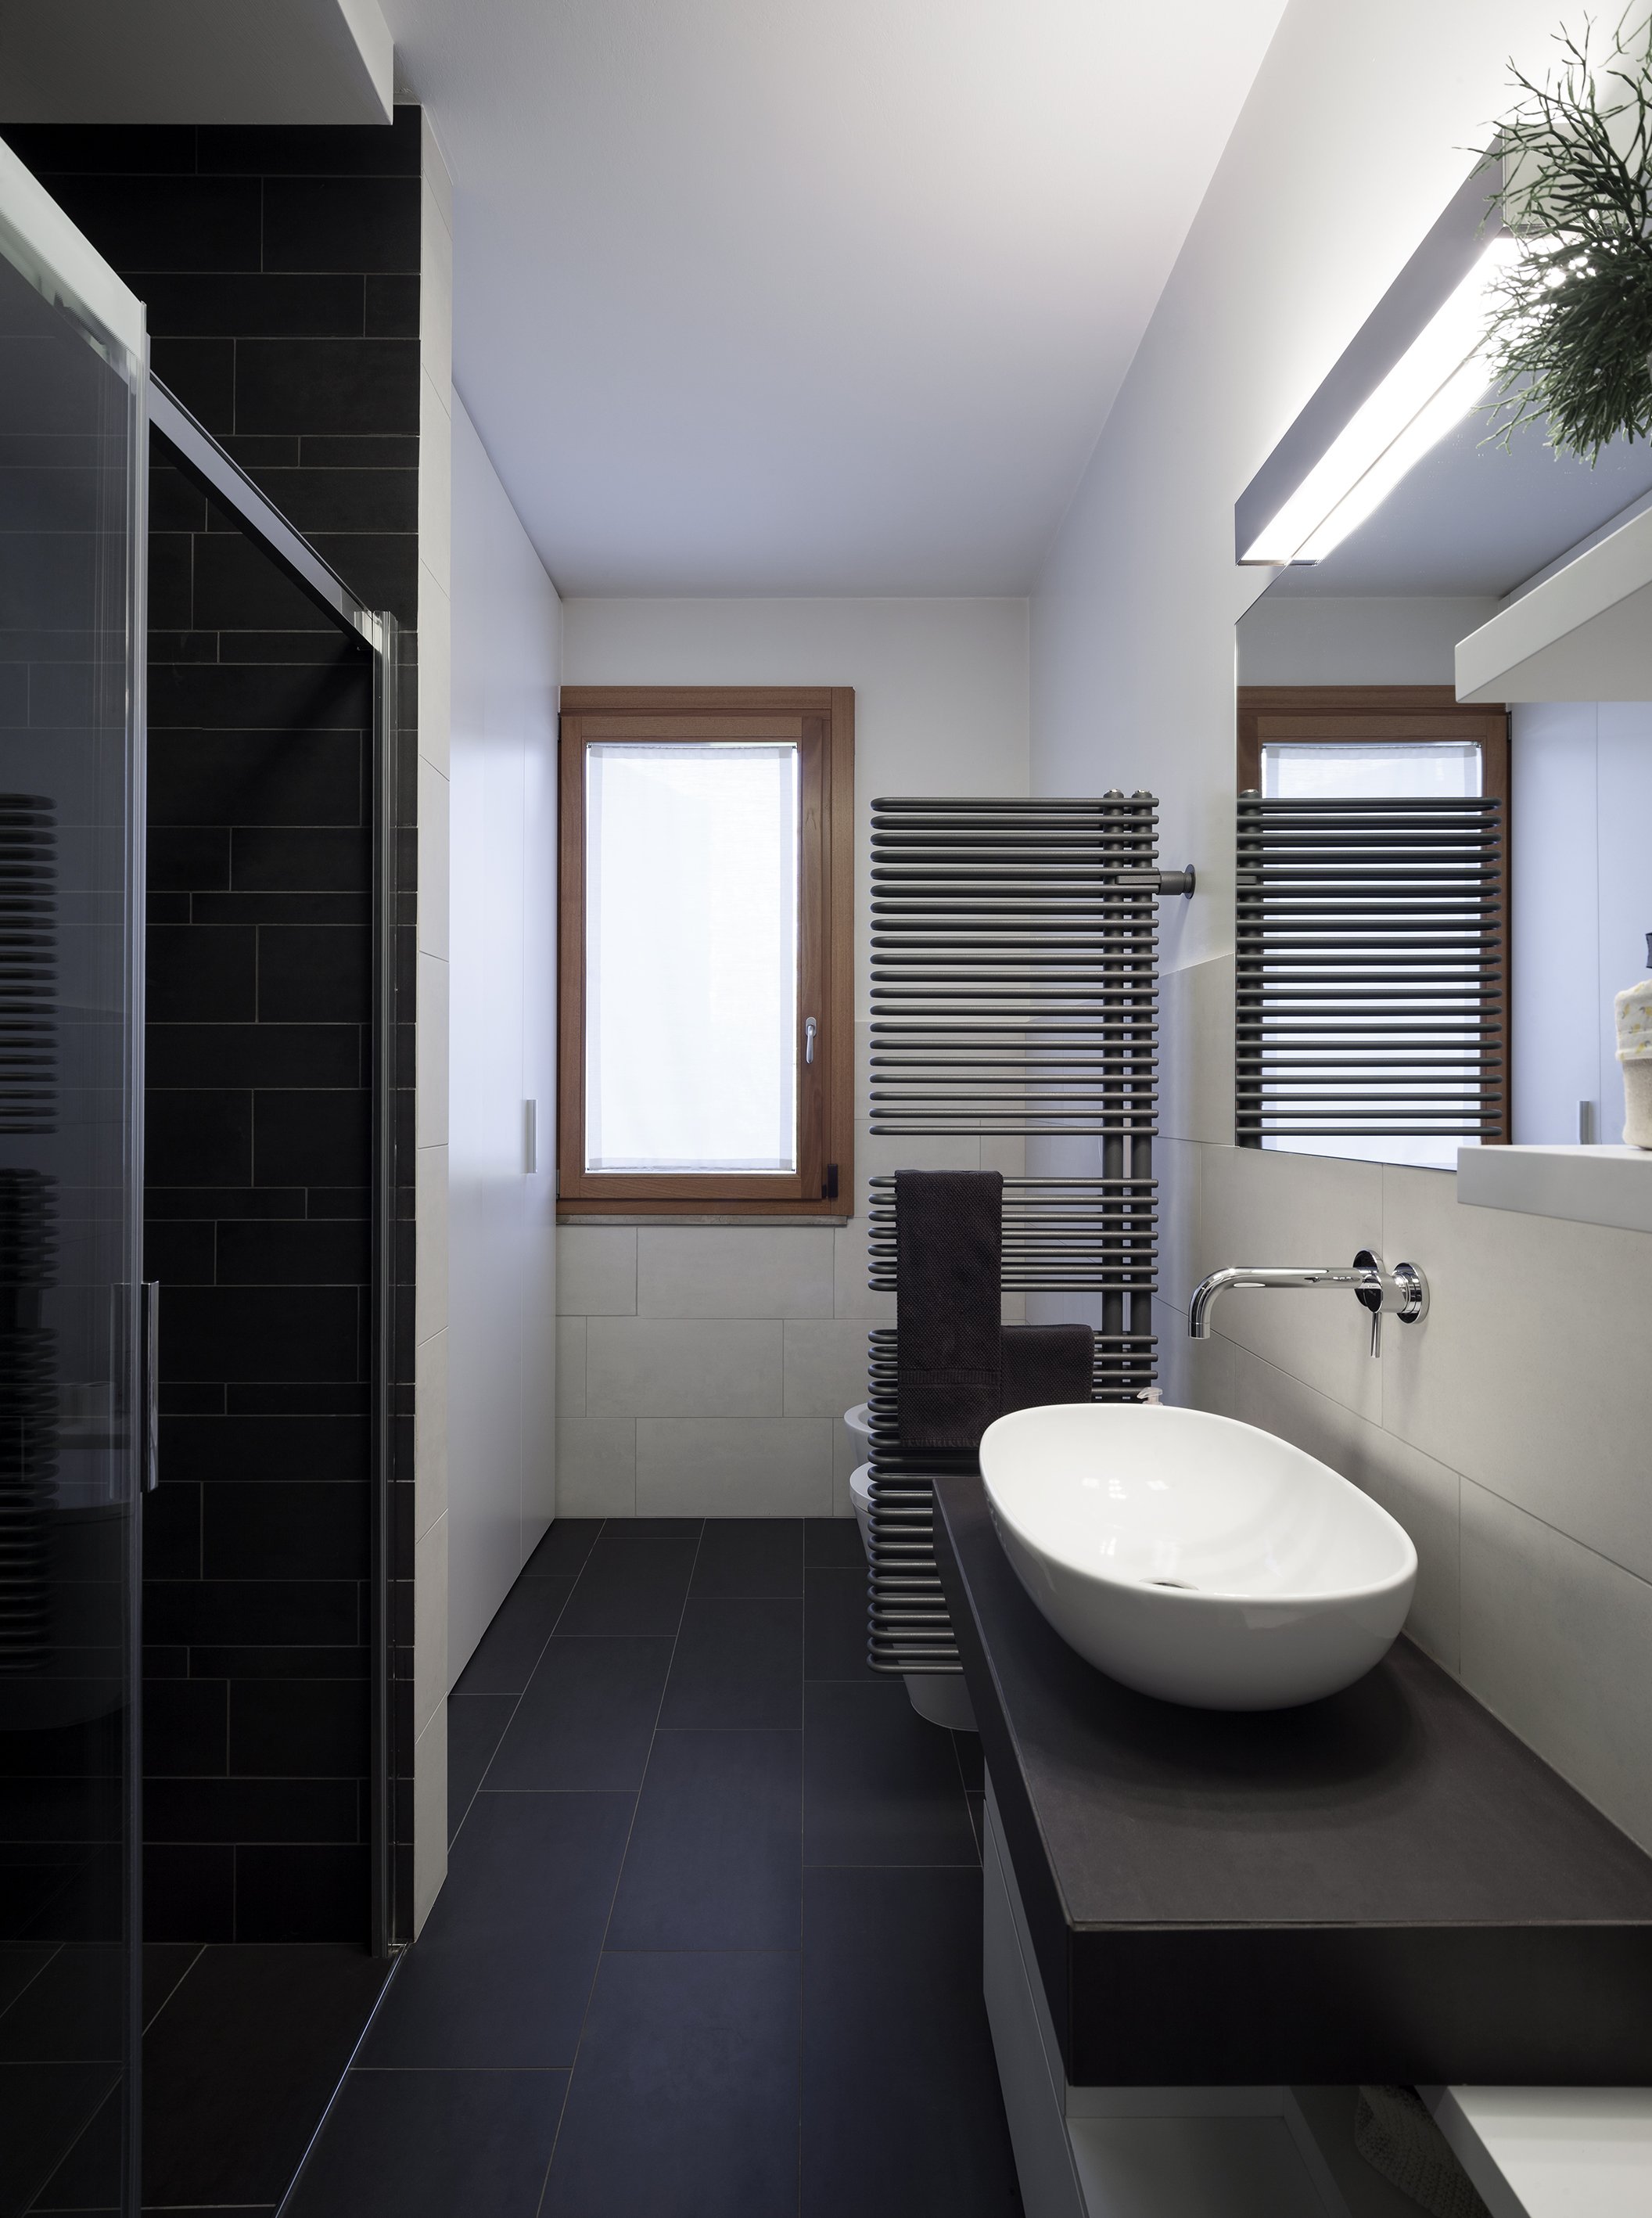 5 секретов, как визуально увеличить пространство в ванной